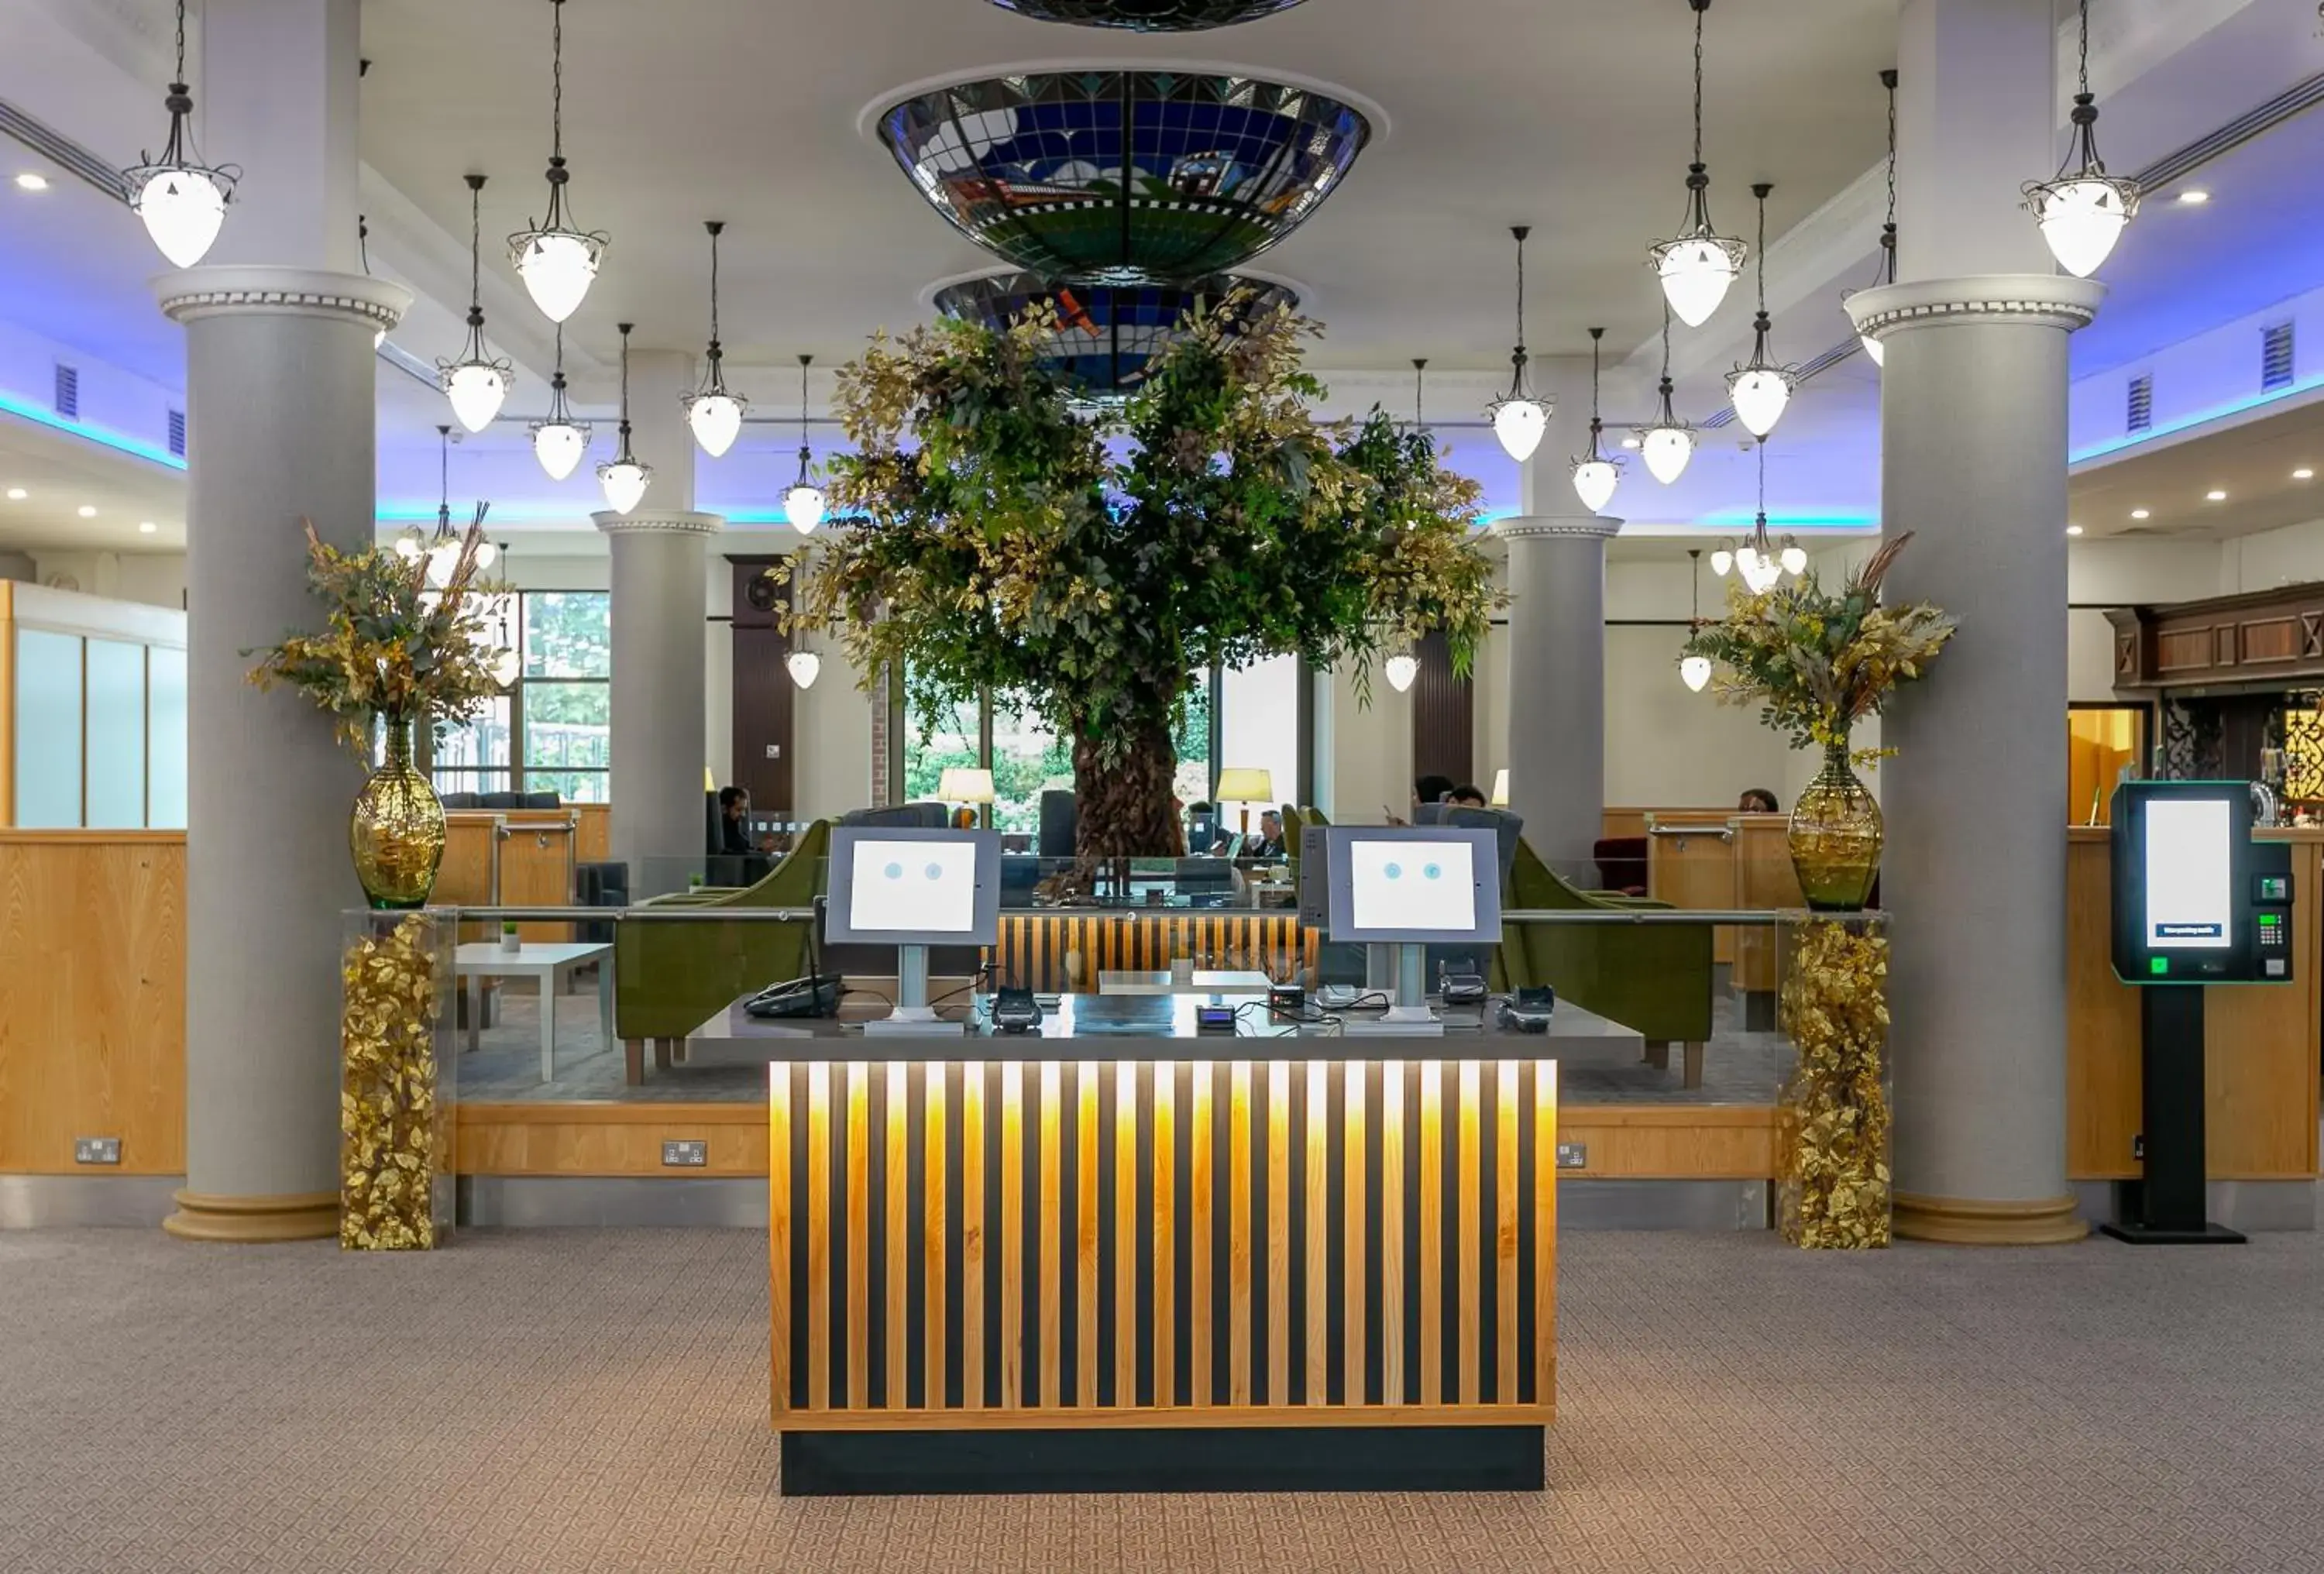 Lobby or reception in Cedar Court Bradford Hotel